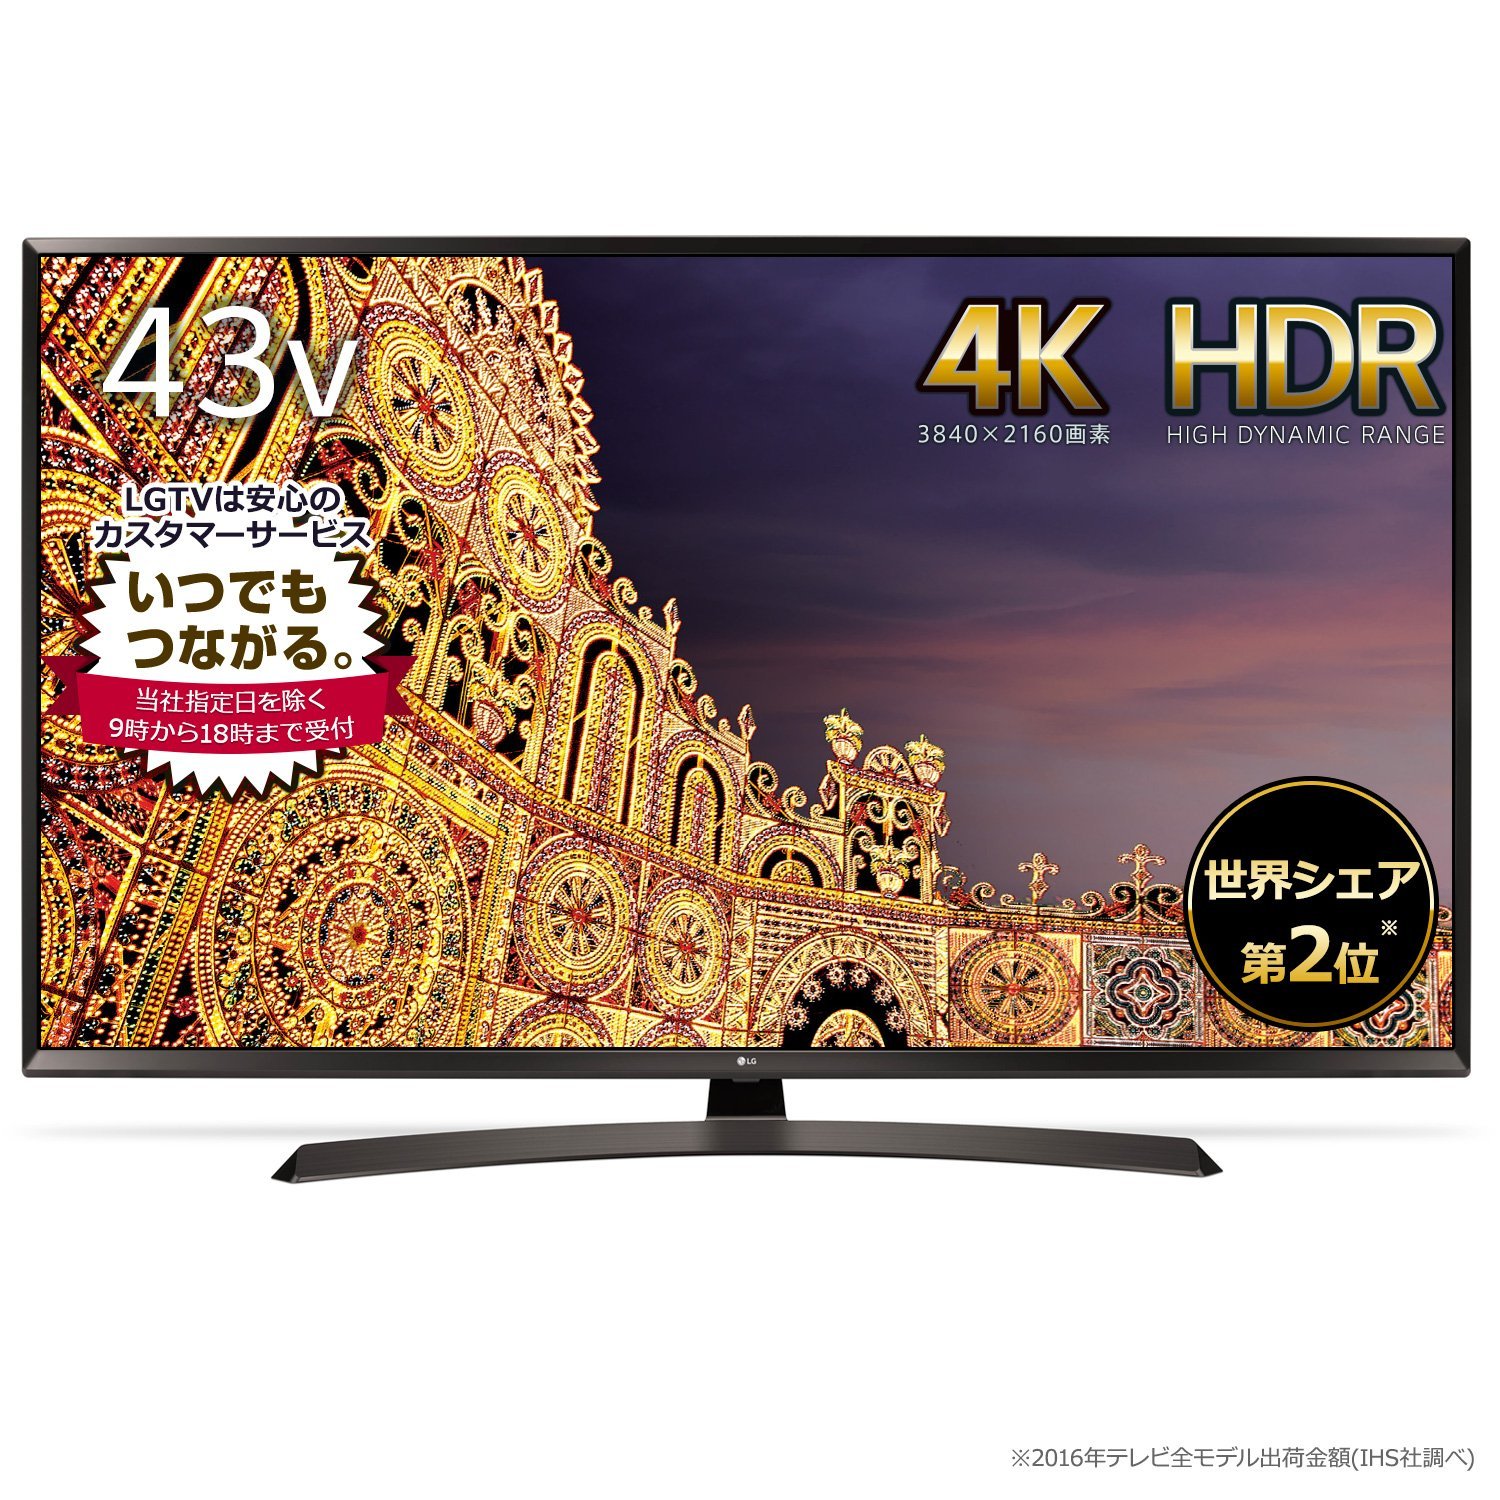 LGの43インチ4K/HDR対応テレビ「43UJ630A」が本日限定特価で67,800円 